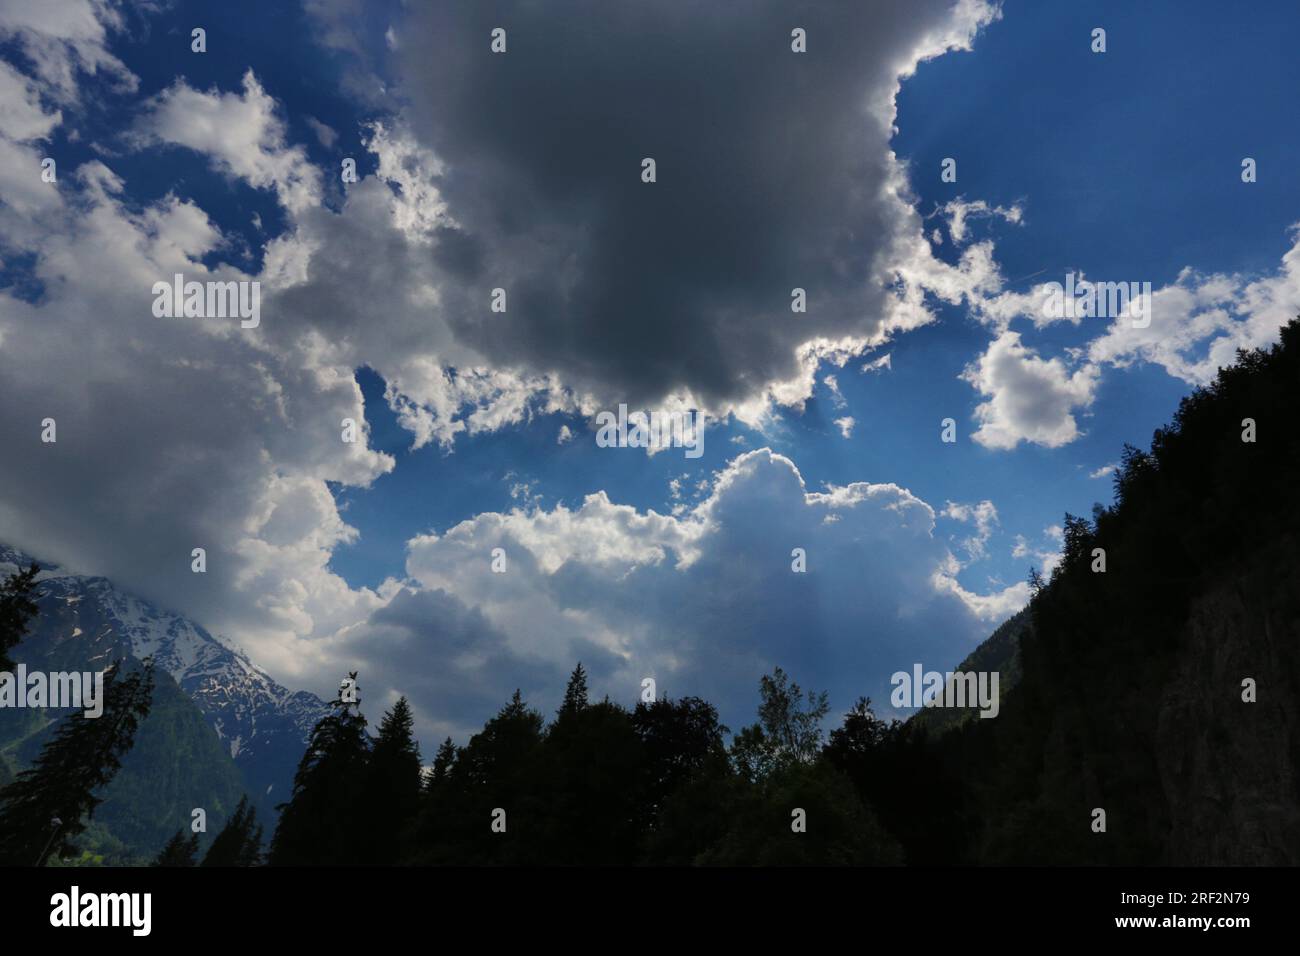 France, Chamonix : nuages en contre jour et ciel bleu Stock Photo